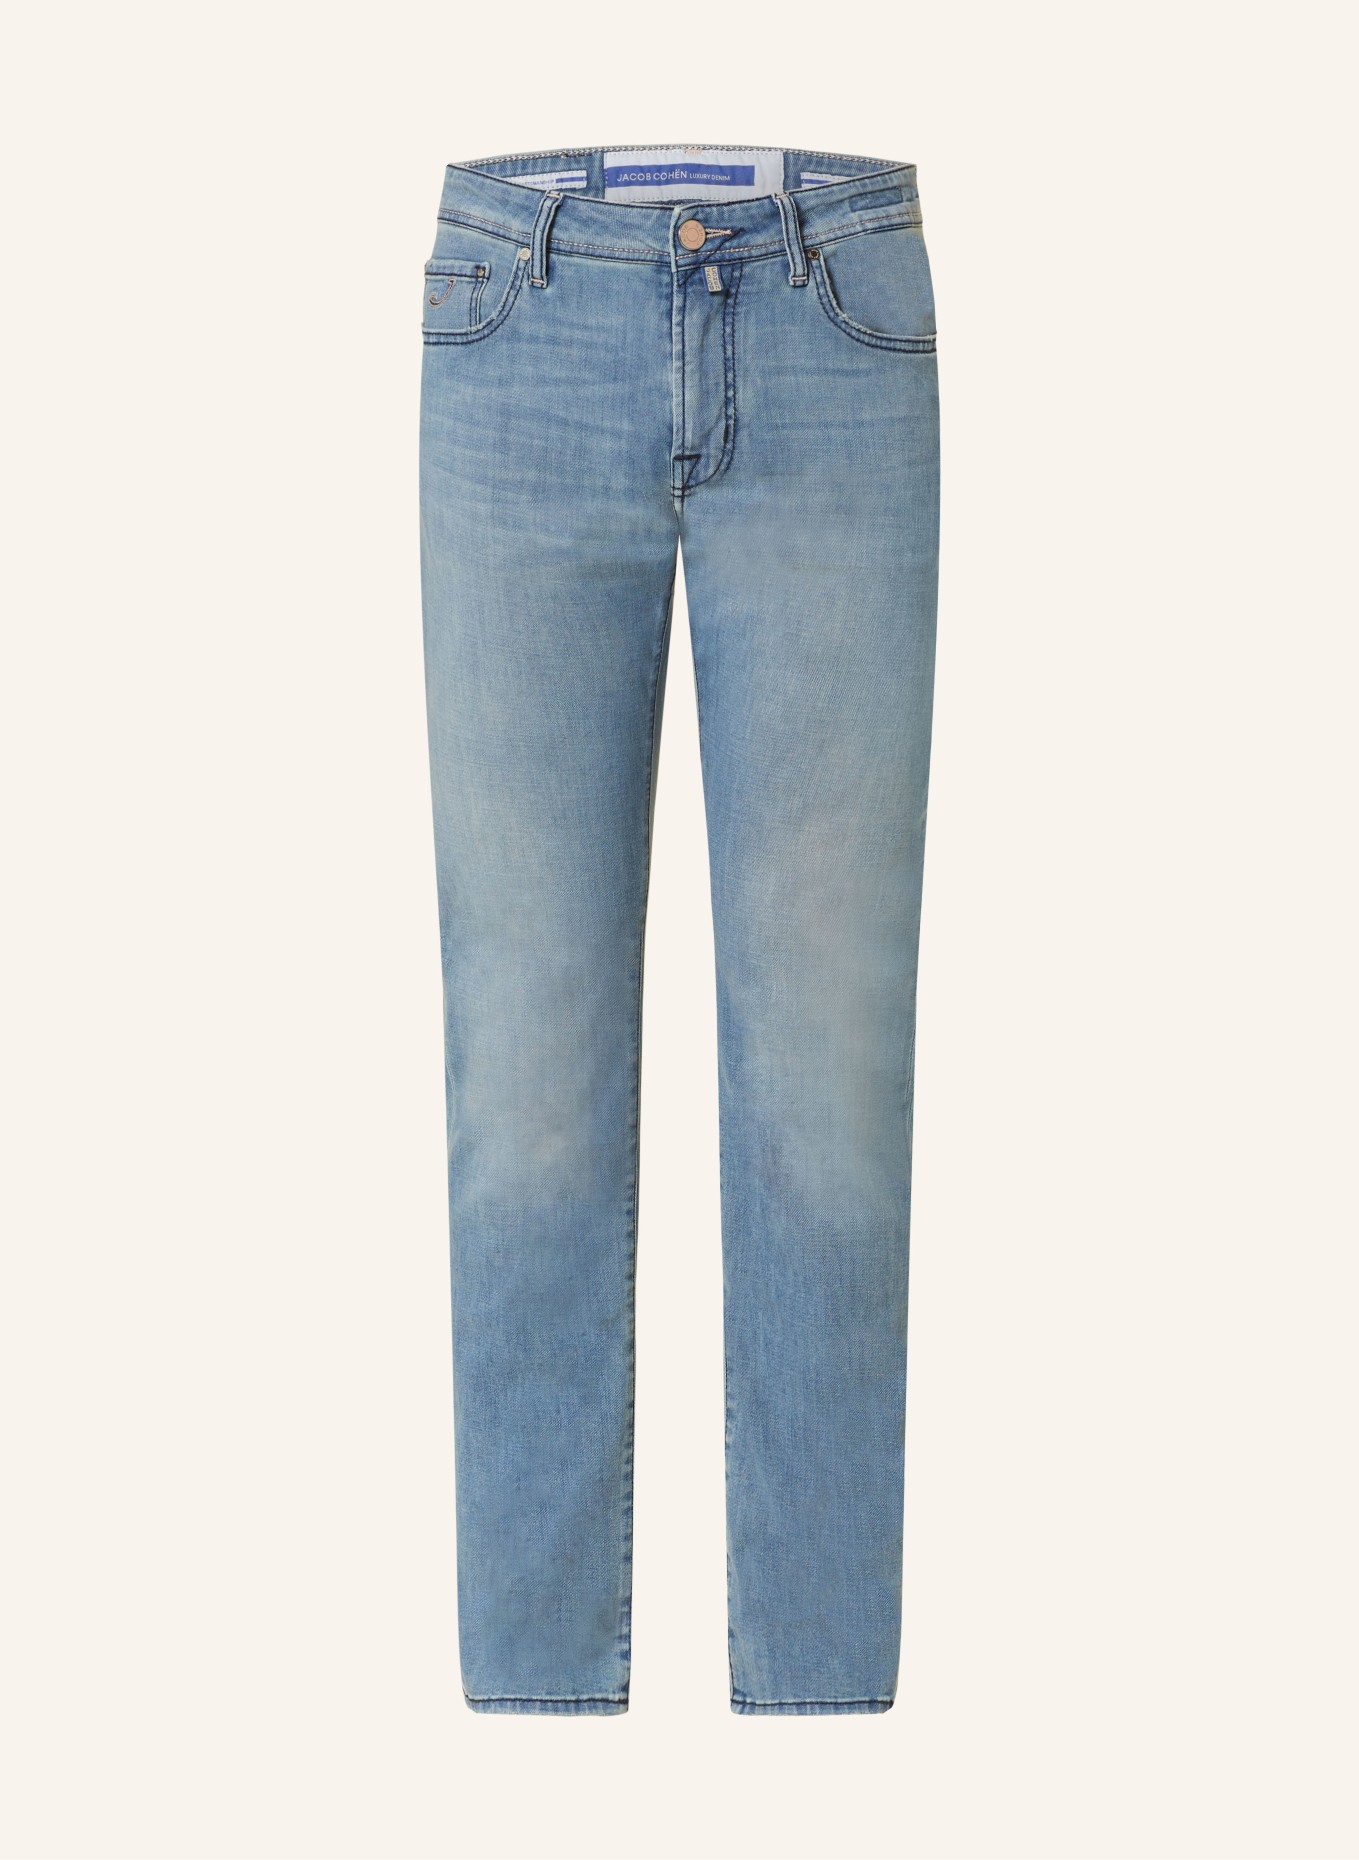 JACOB COHEN Jeans BARD slim fit, Color: 701D Light Blue (Image 1)